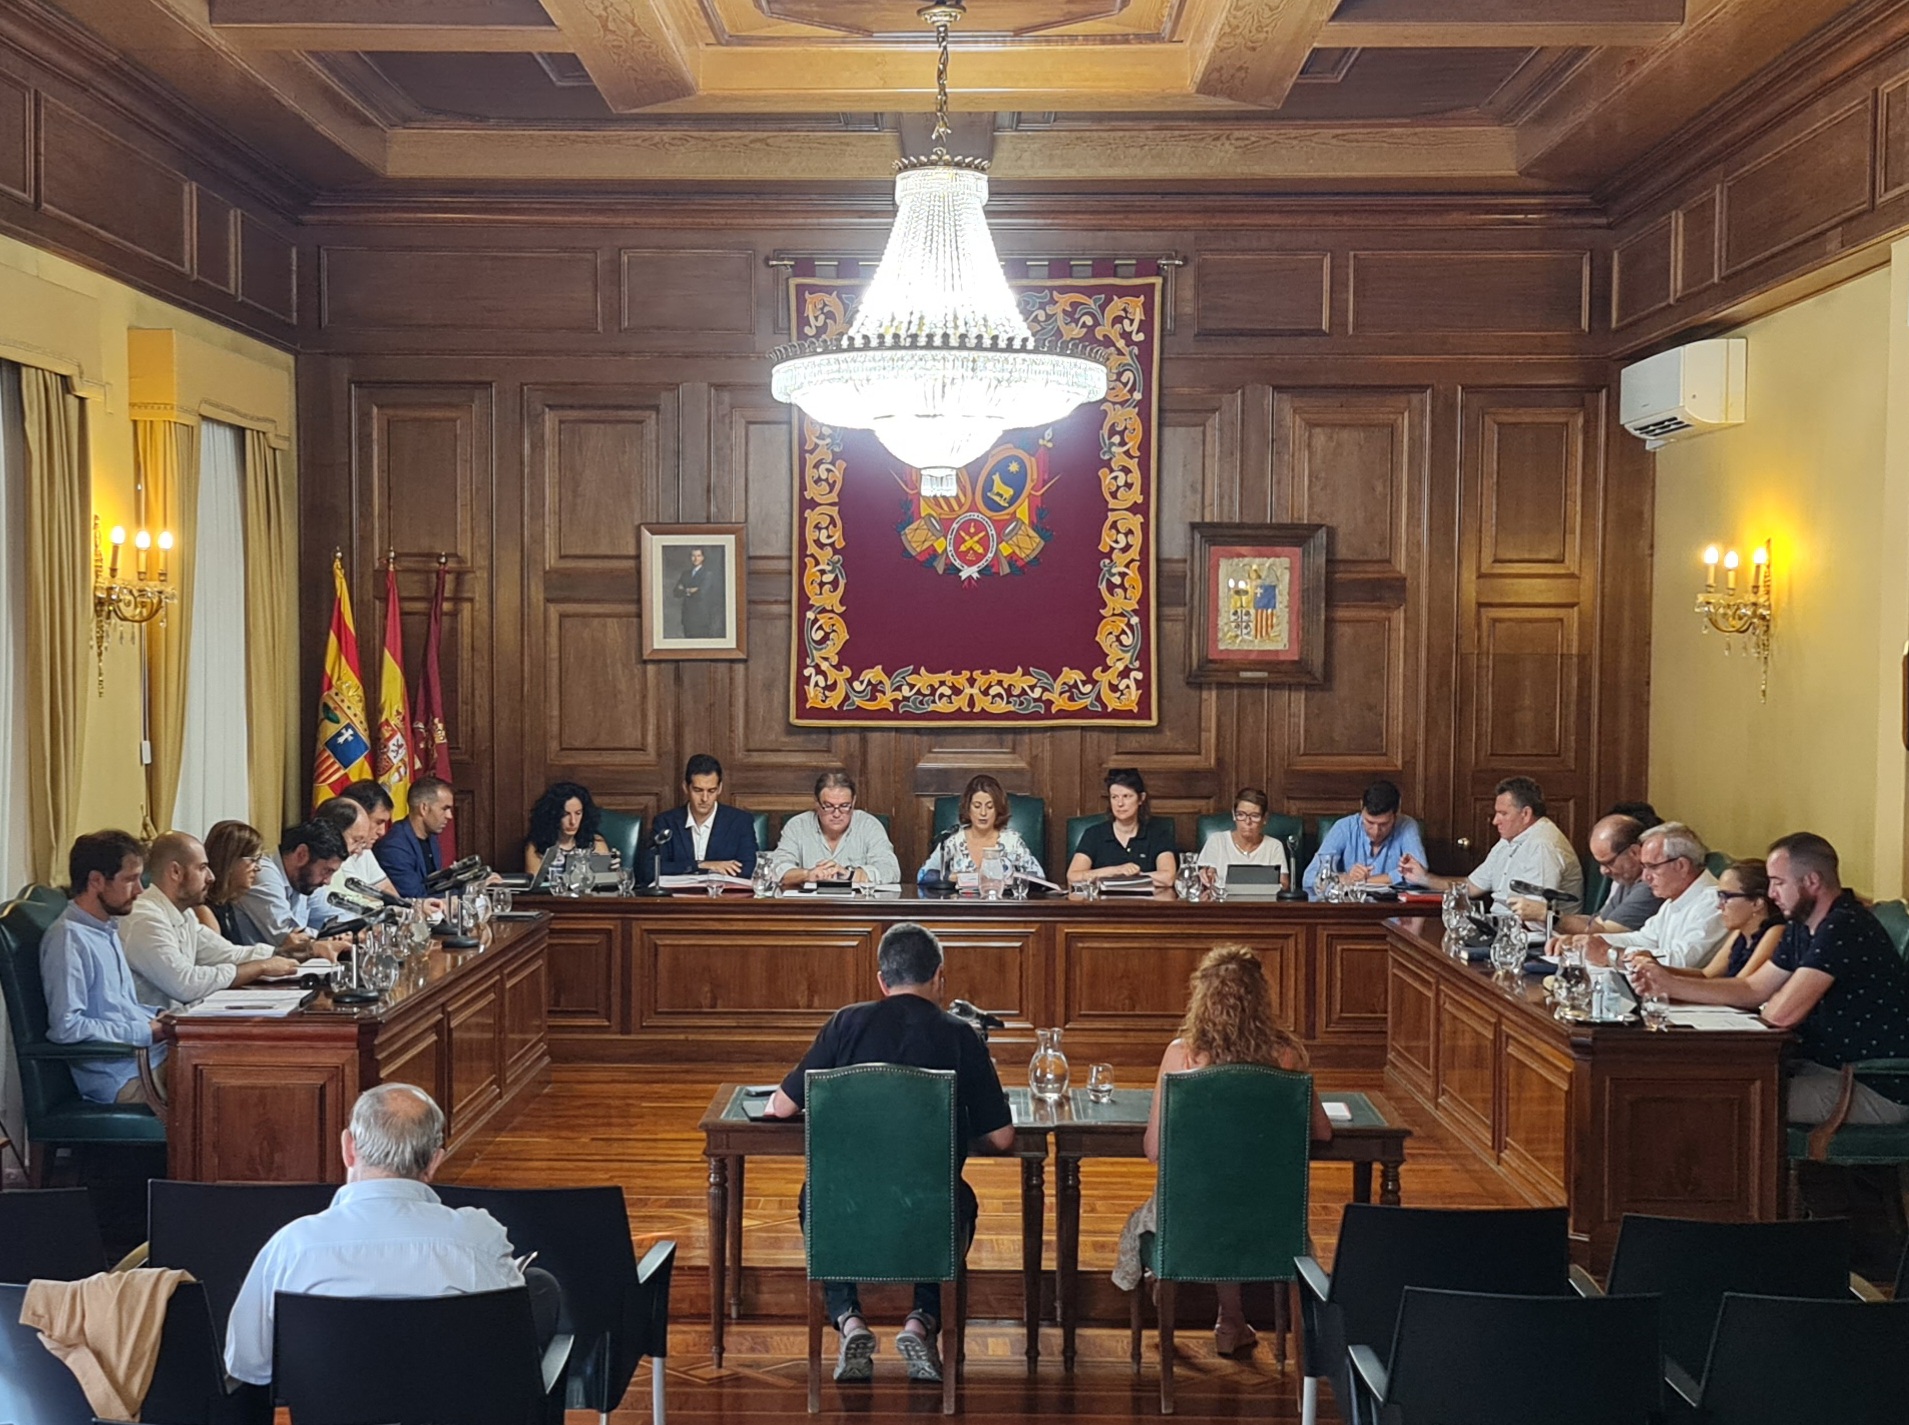 El pleno del Ayuntamiento de Teruel aprueba solicitar subvenciones a la FEMP para mejorar instalaciones deportivas